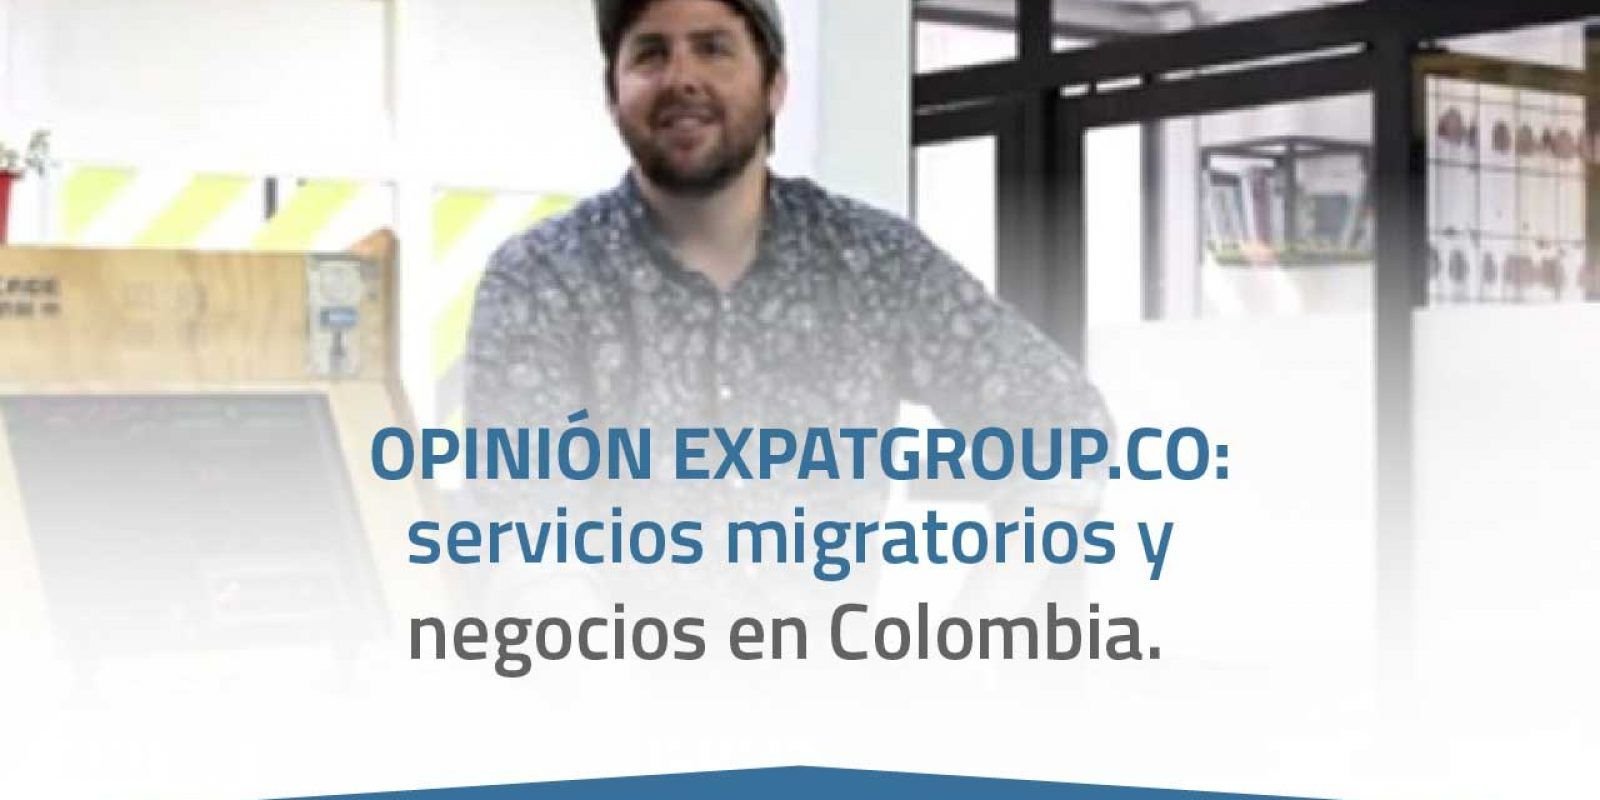 Opinión Expatgroup.co: servicios migratorios y negocios en Colombia